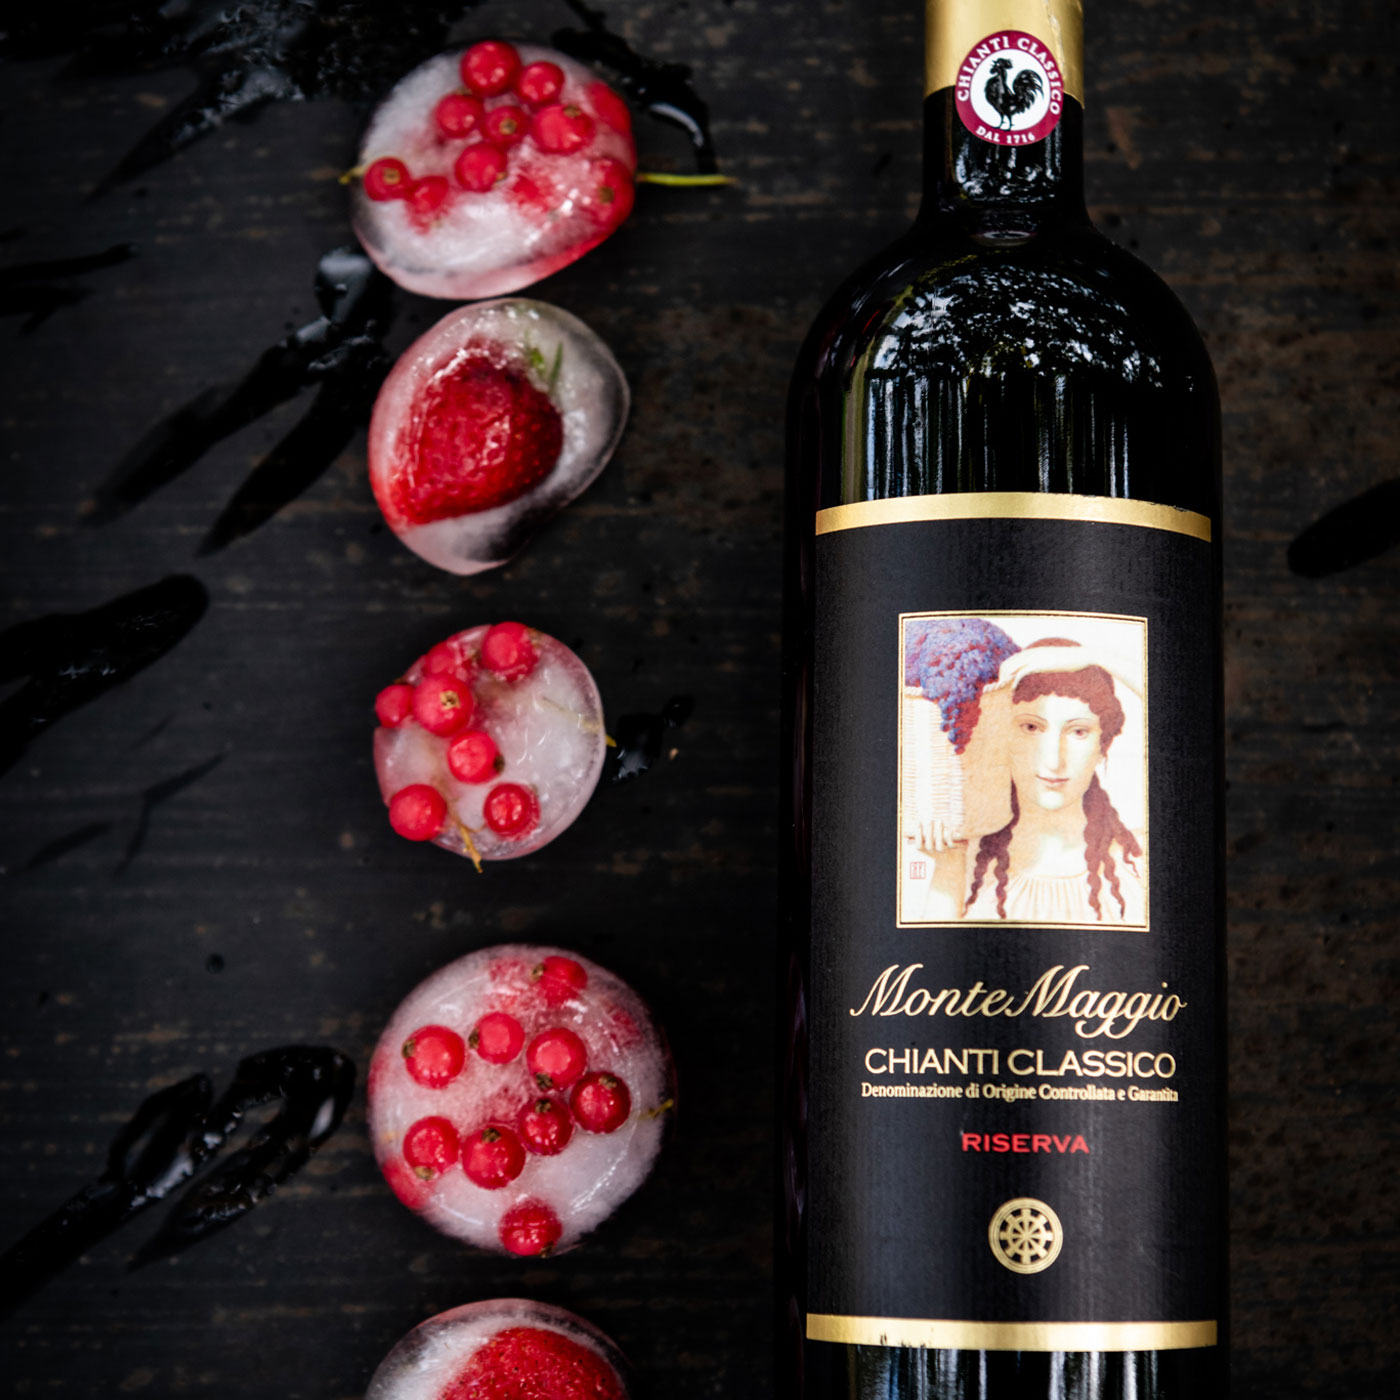 Order Chianti Classico Riserva for an elegant full rich velvet smooth red wine